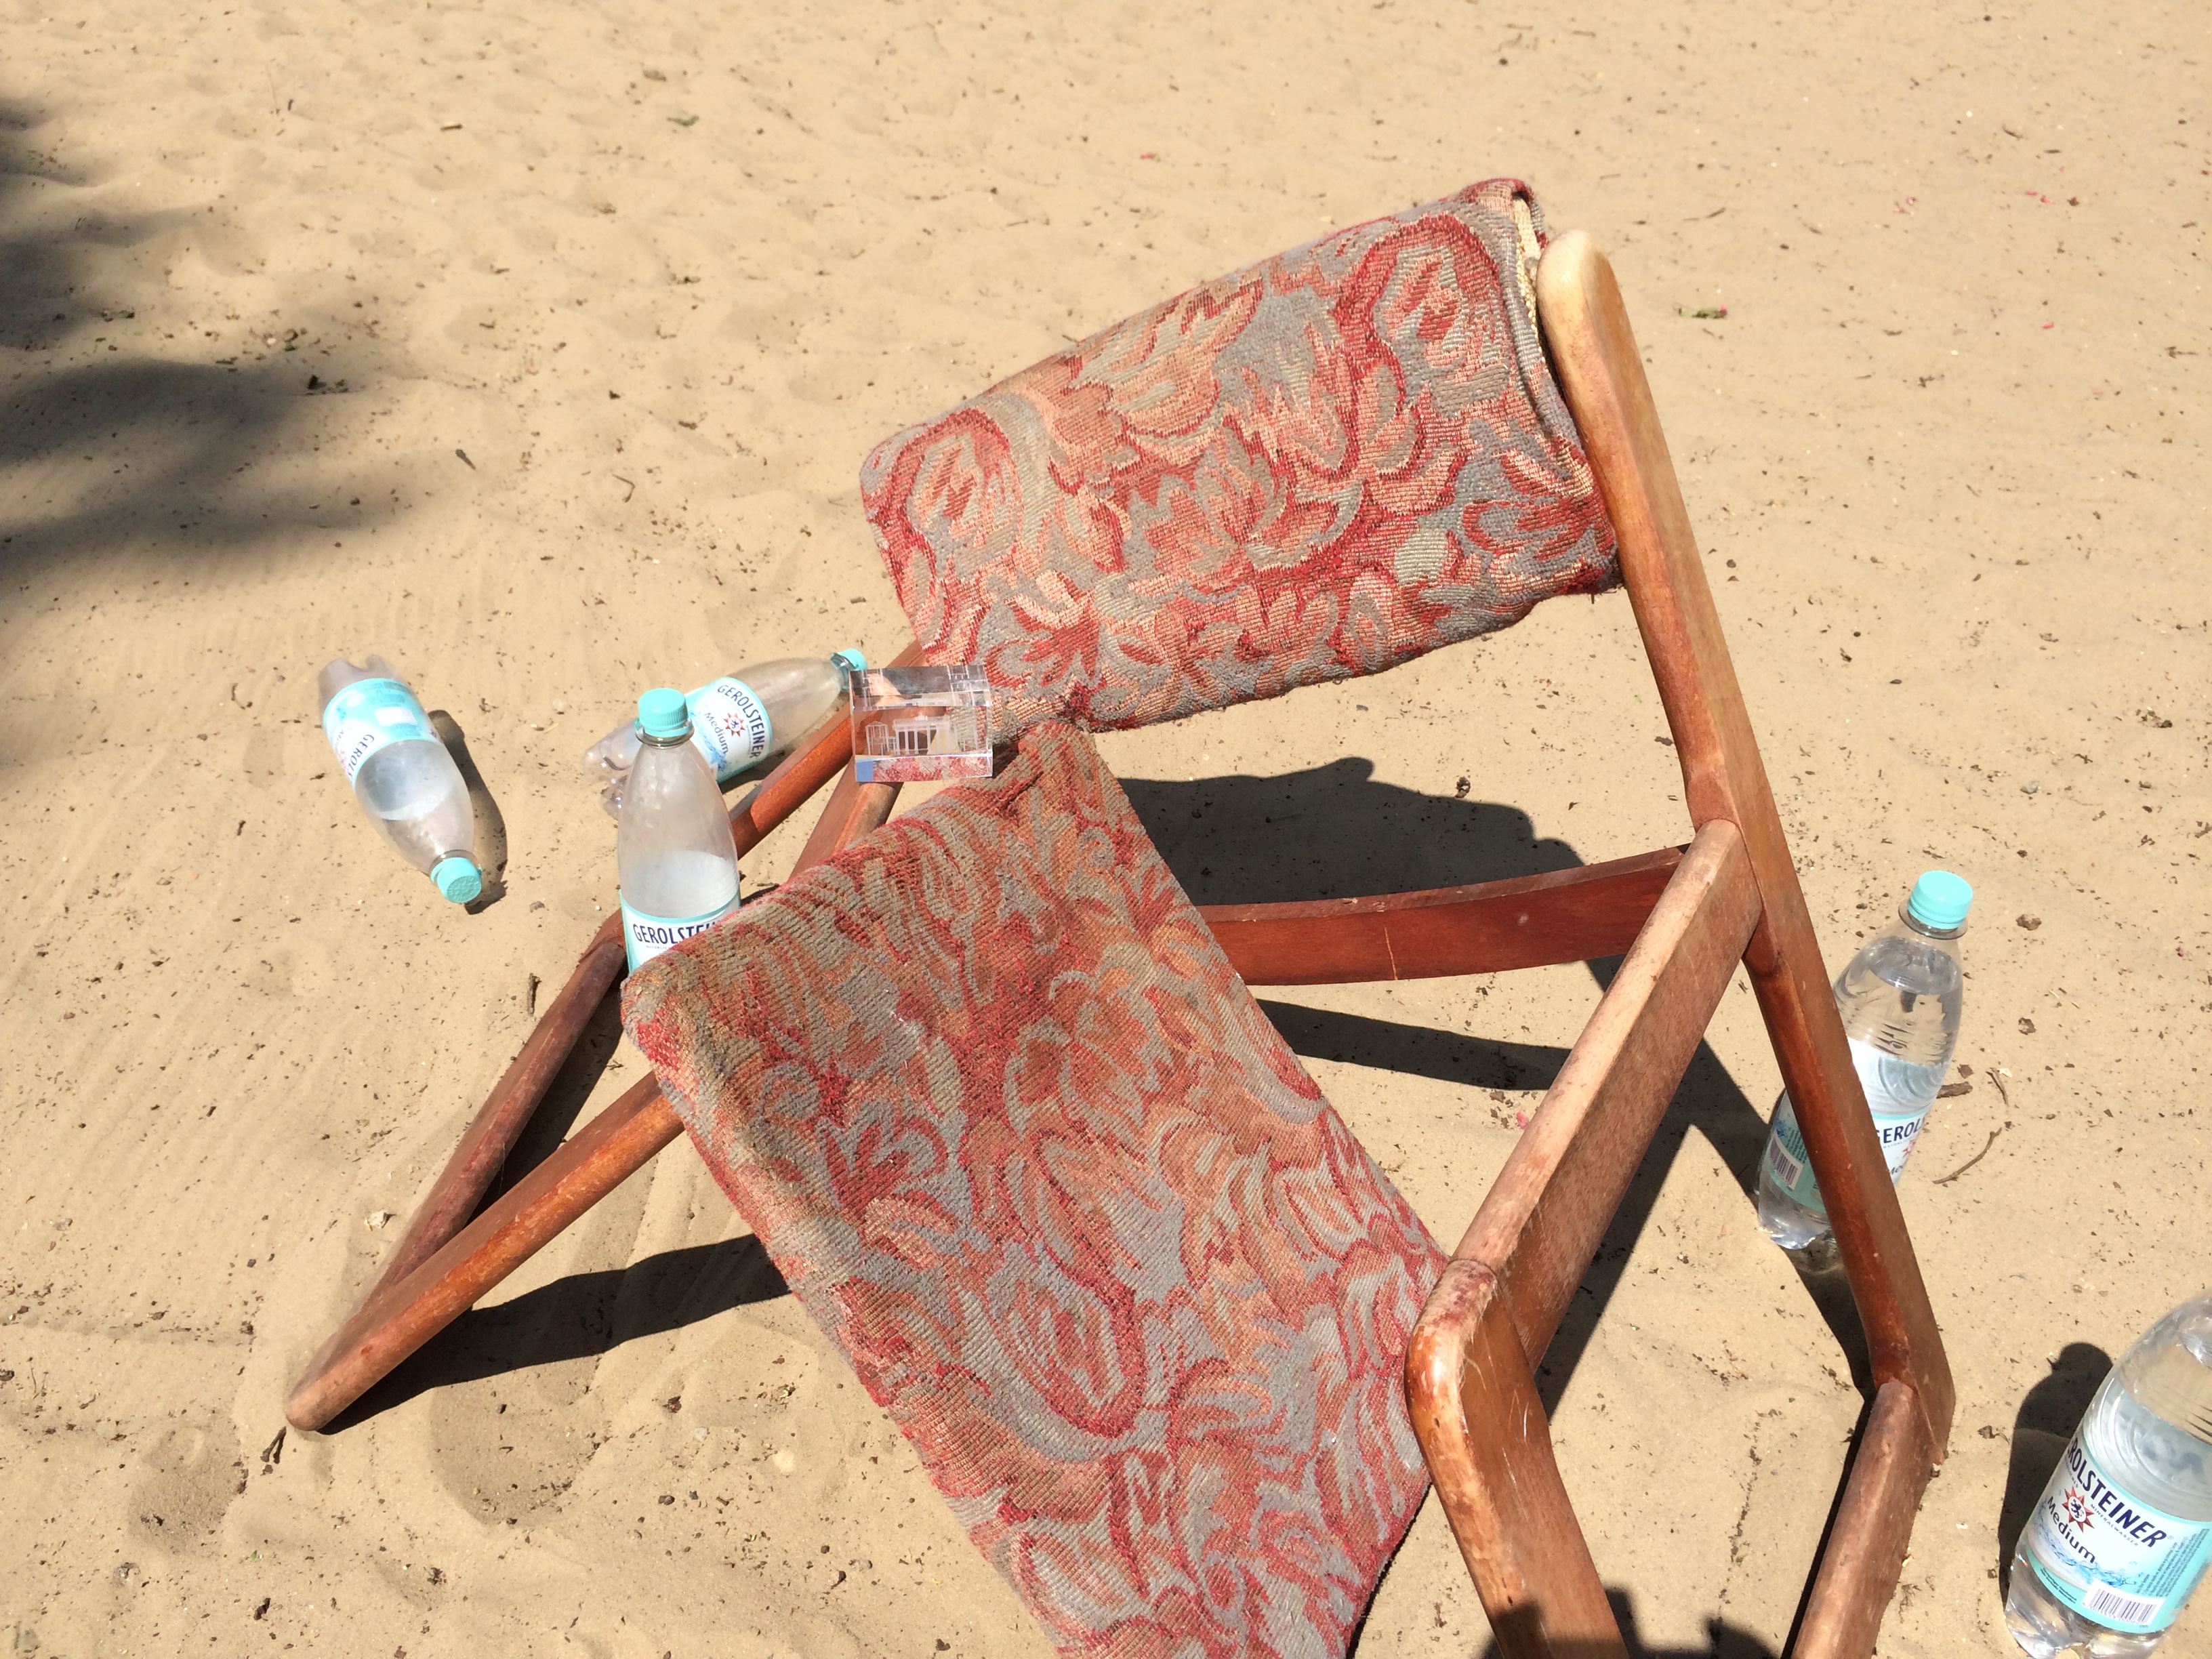 Auf einer Sandfläche steht ein brauner Holzstuhl. Rückenlehne und Sitzfläche sind mit Stoff bespannt, der in Rosatönen gemustert ist. Der Stuhl ist zerbrochen, die Beine nach außen geknickt, die Sitzfläche liegt mit einer Seite im Sand. Zu beiden Seiten des Stuhles stehen und liegen Wasserflaschen am Boden.